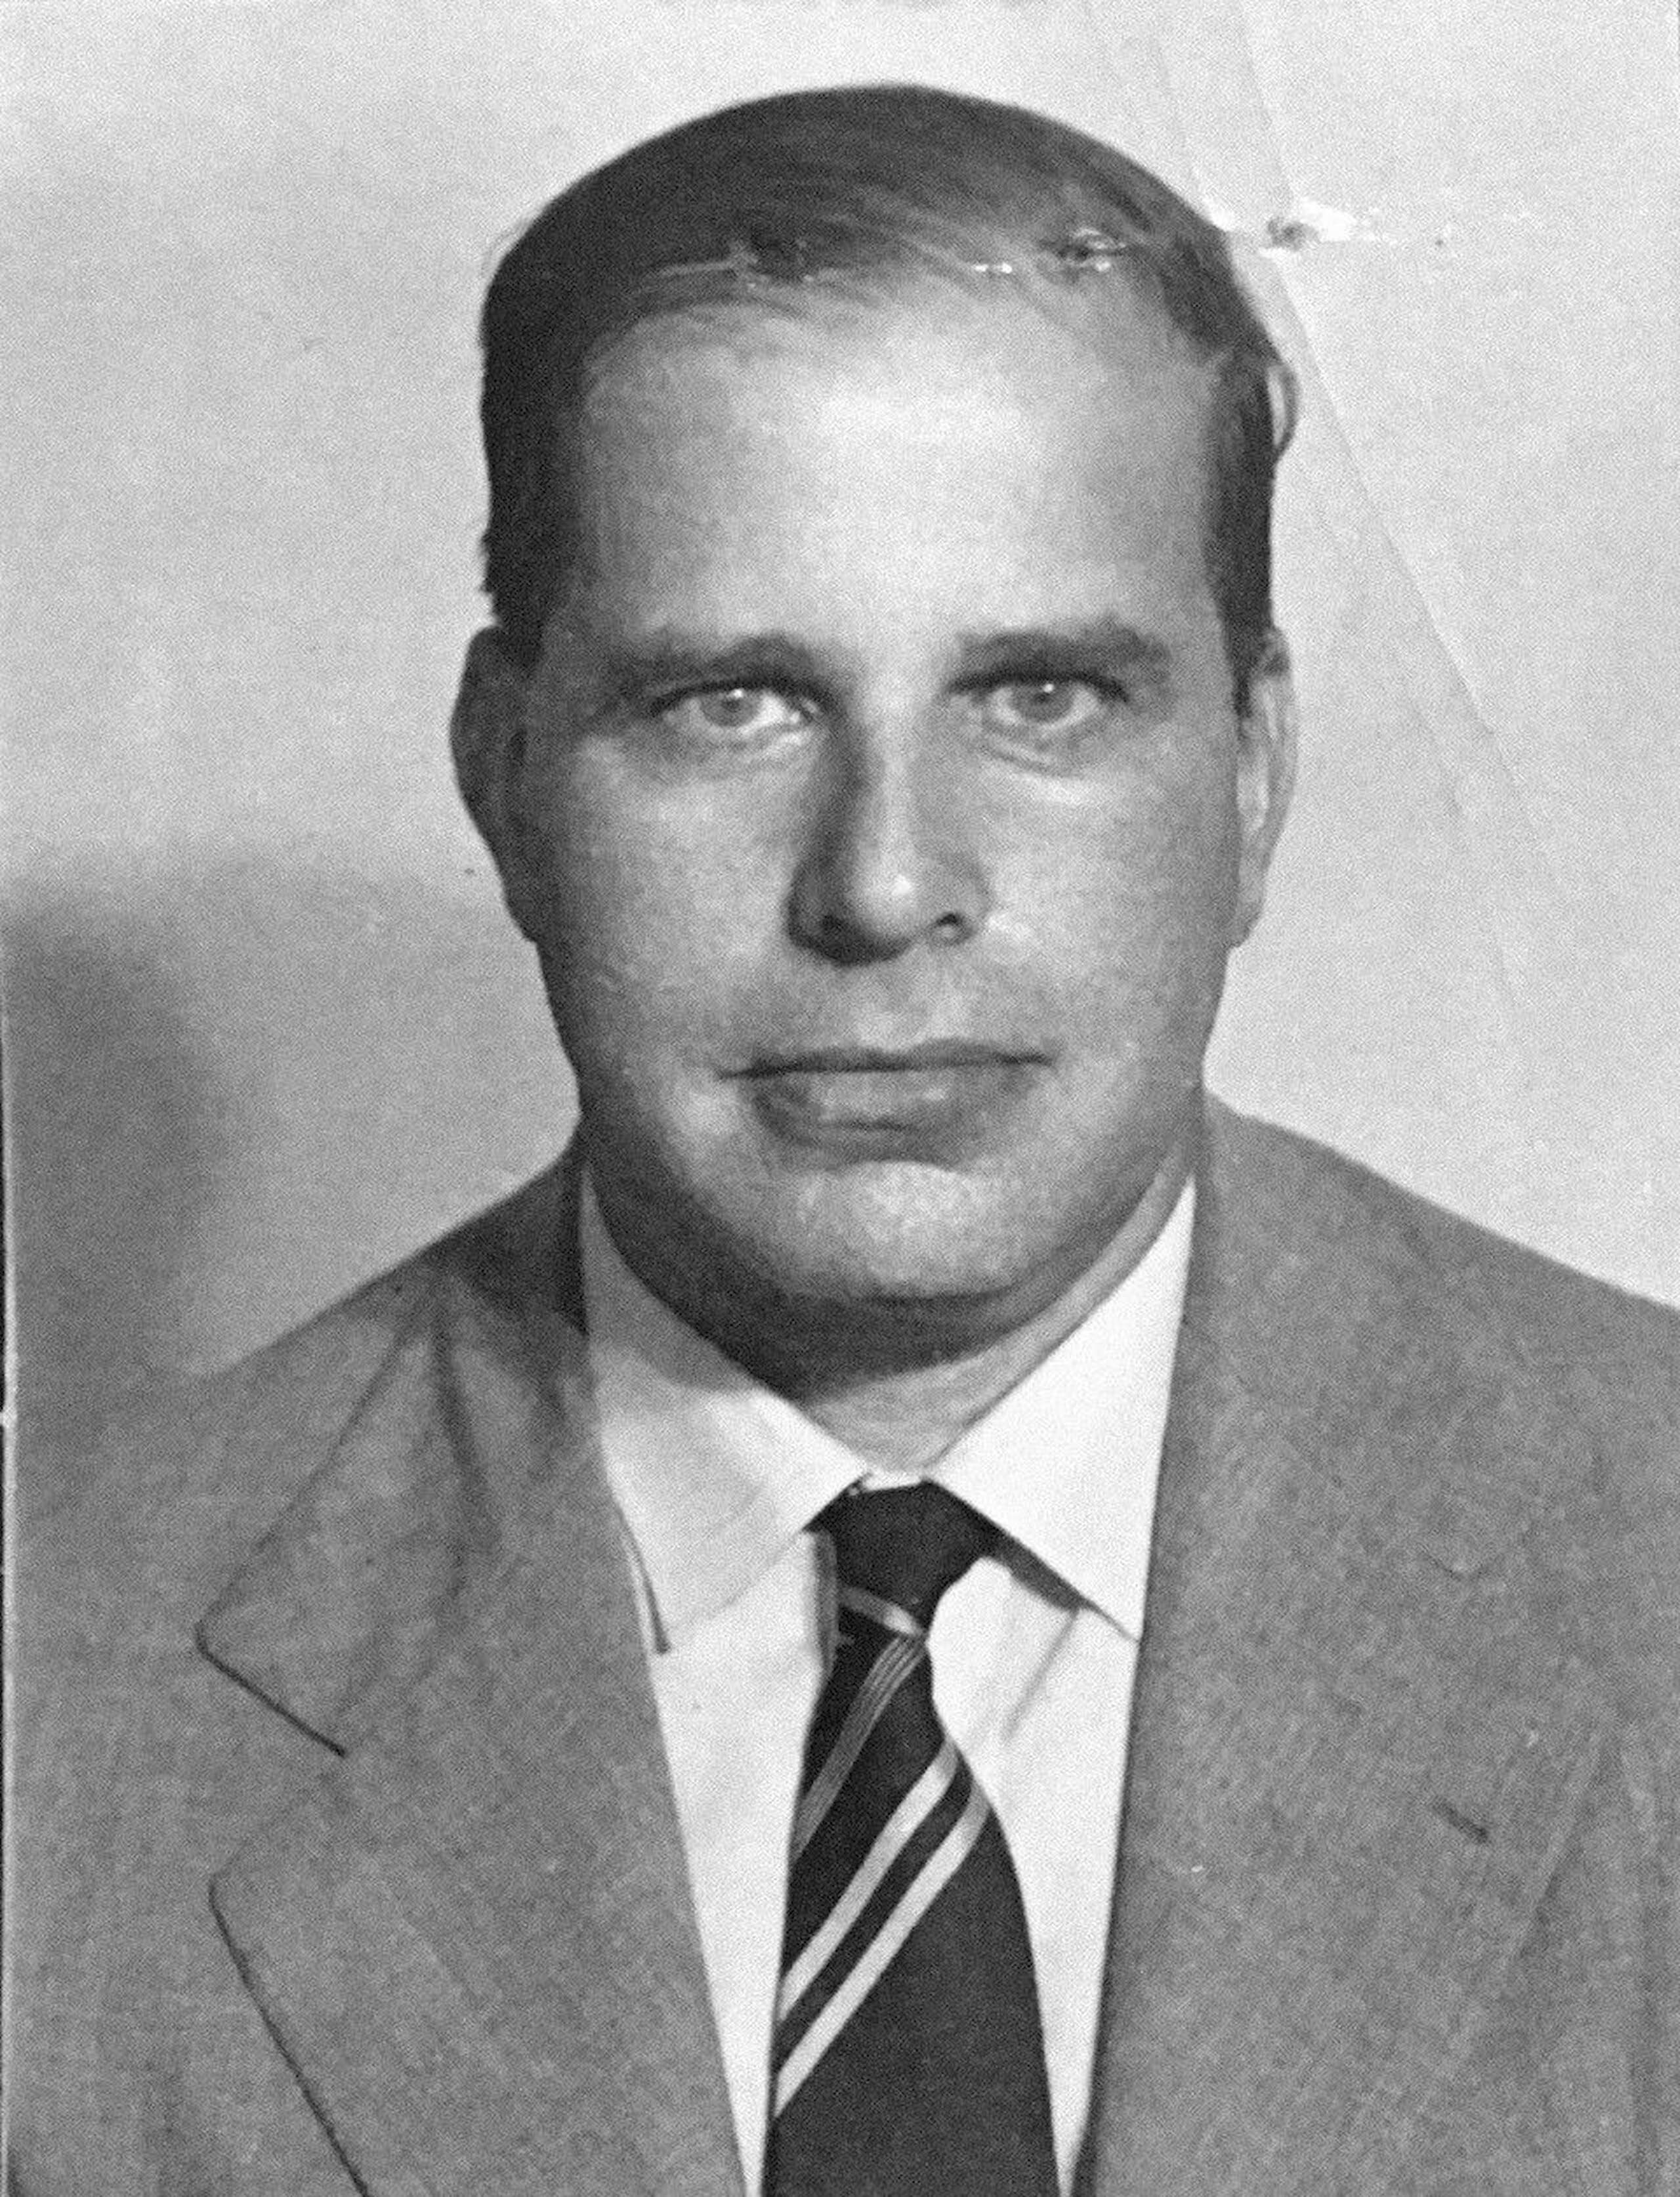 Oswald Lassally, 1950